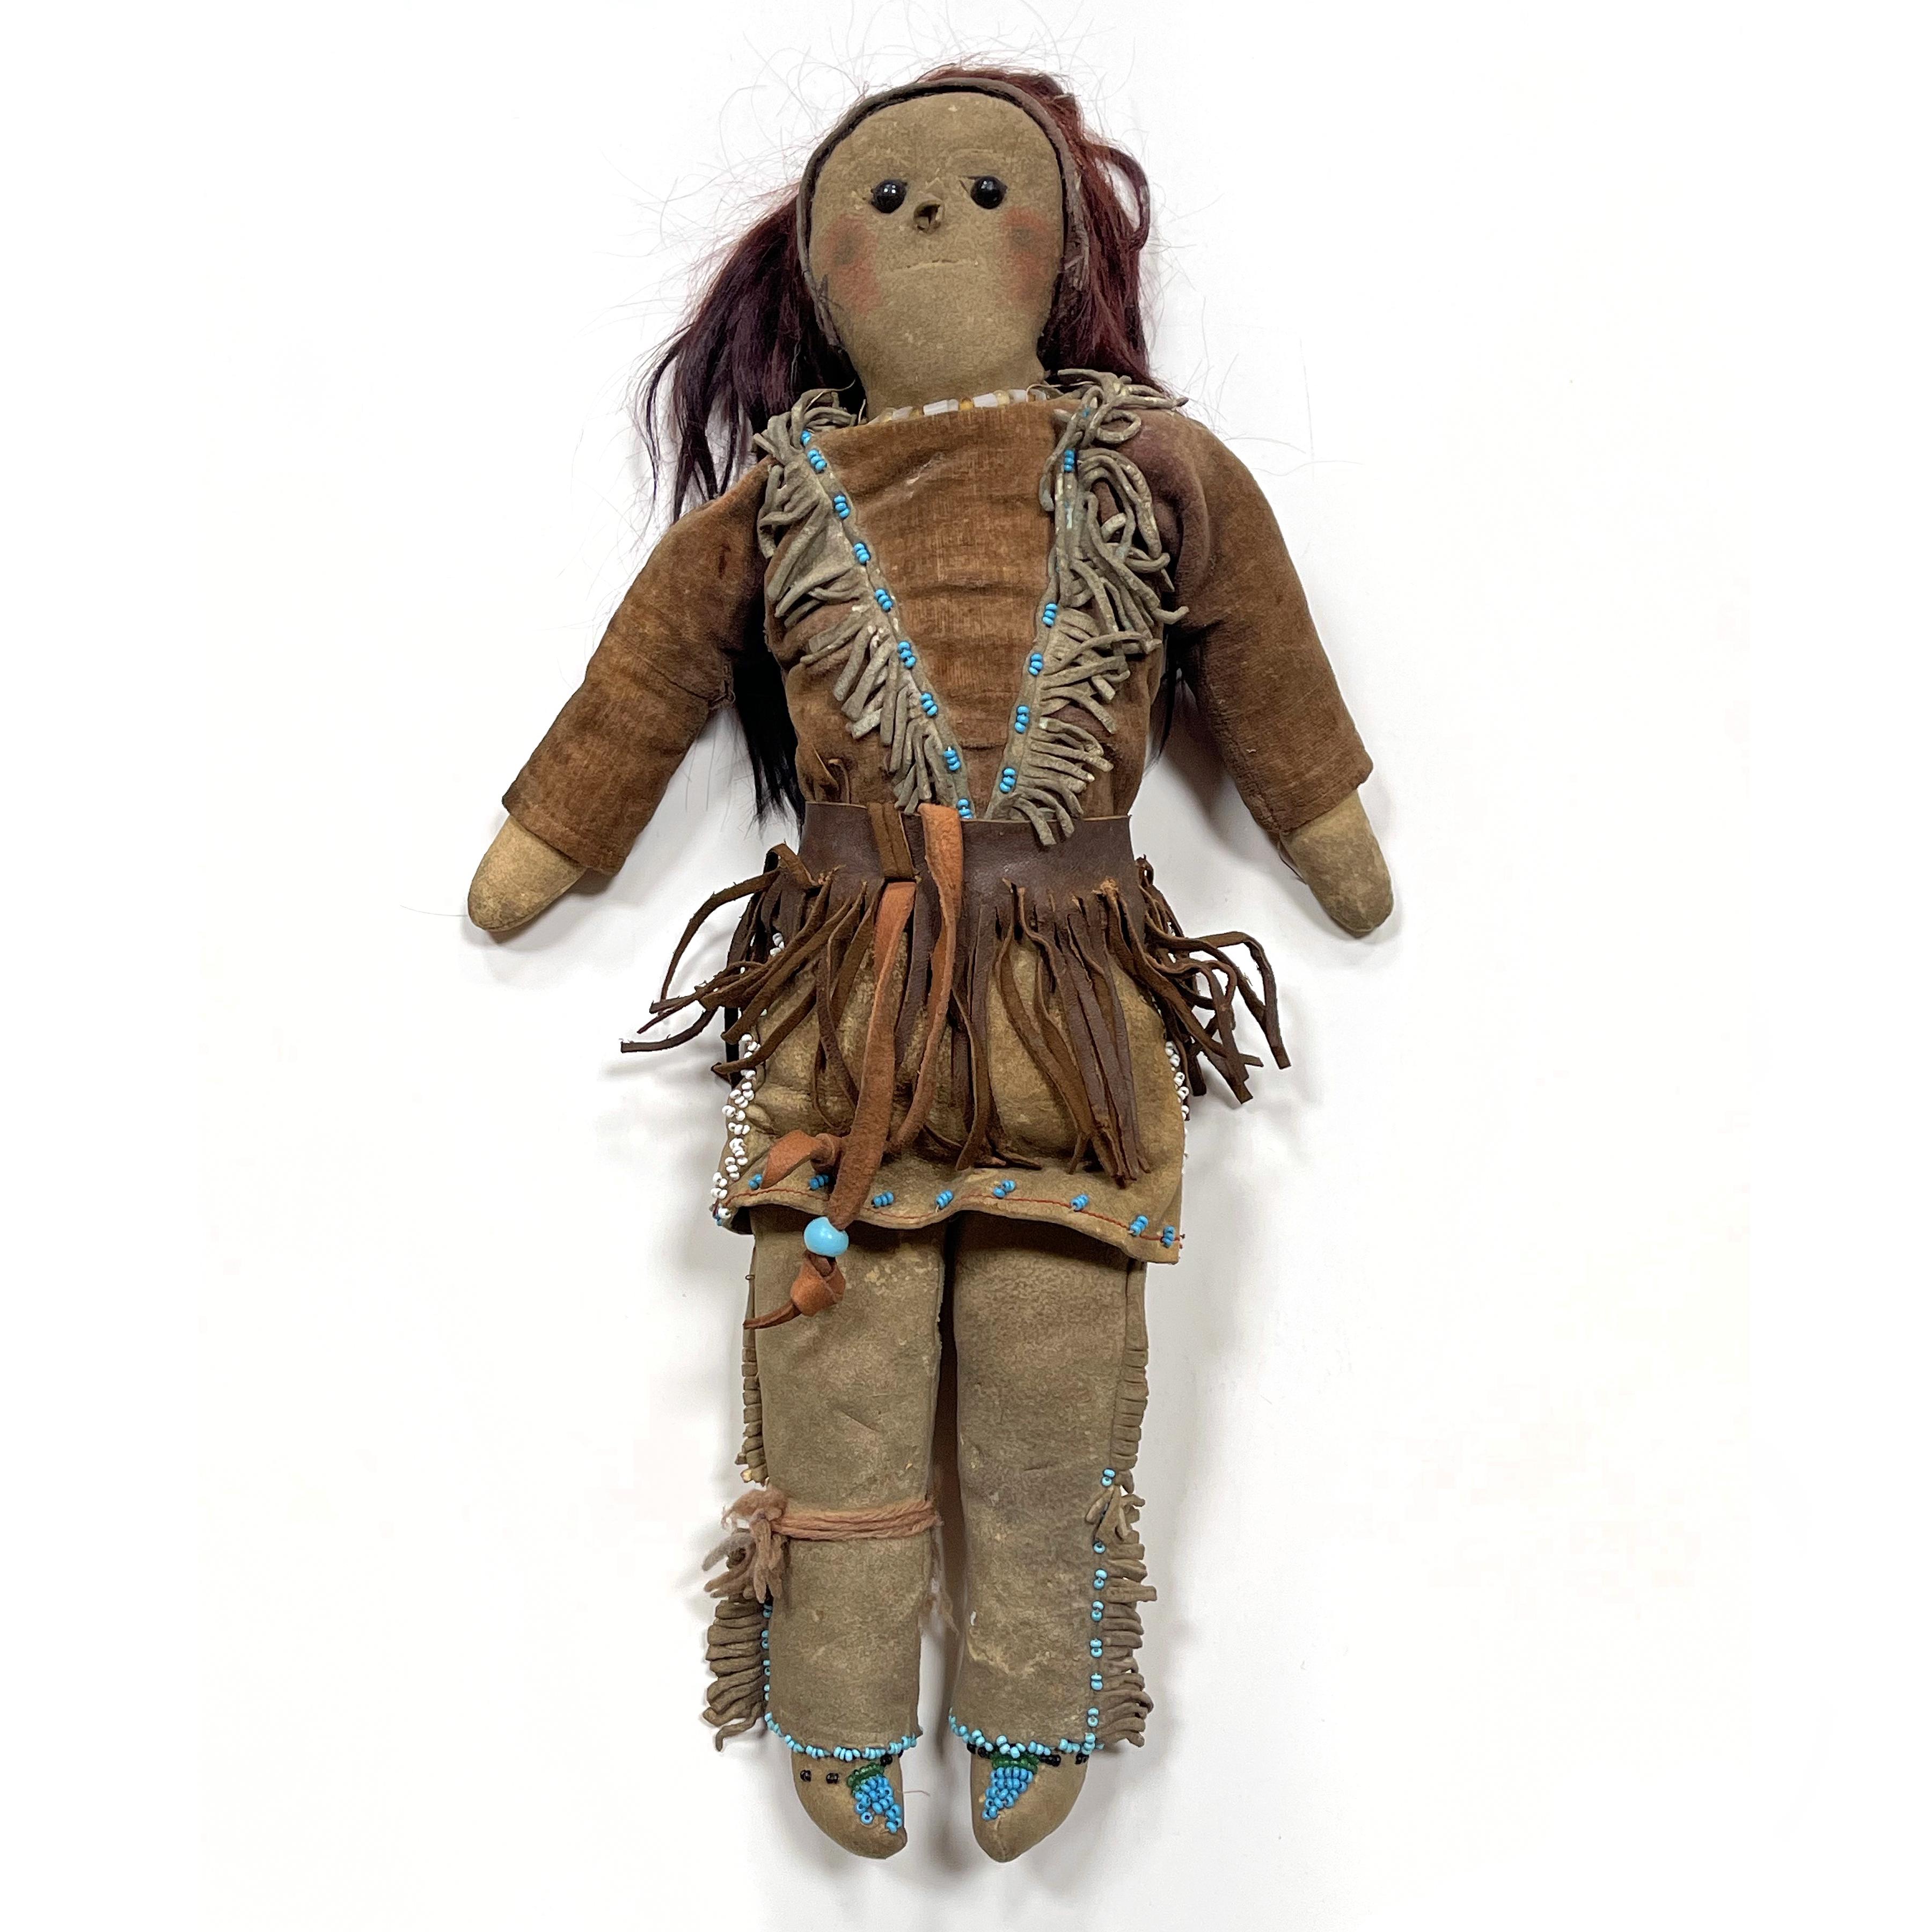 Hier ist ein außergewöhnliches Stück, frisch aus einem alten Nachlass.

Diese schöne antike indianische Puppe hat unglaubliche Präsenz und eine fantastische Patina von Jahren des Spiels. Mit einer Höhe von 15